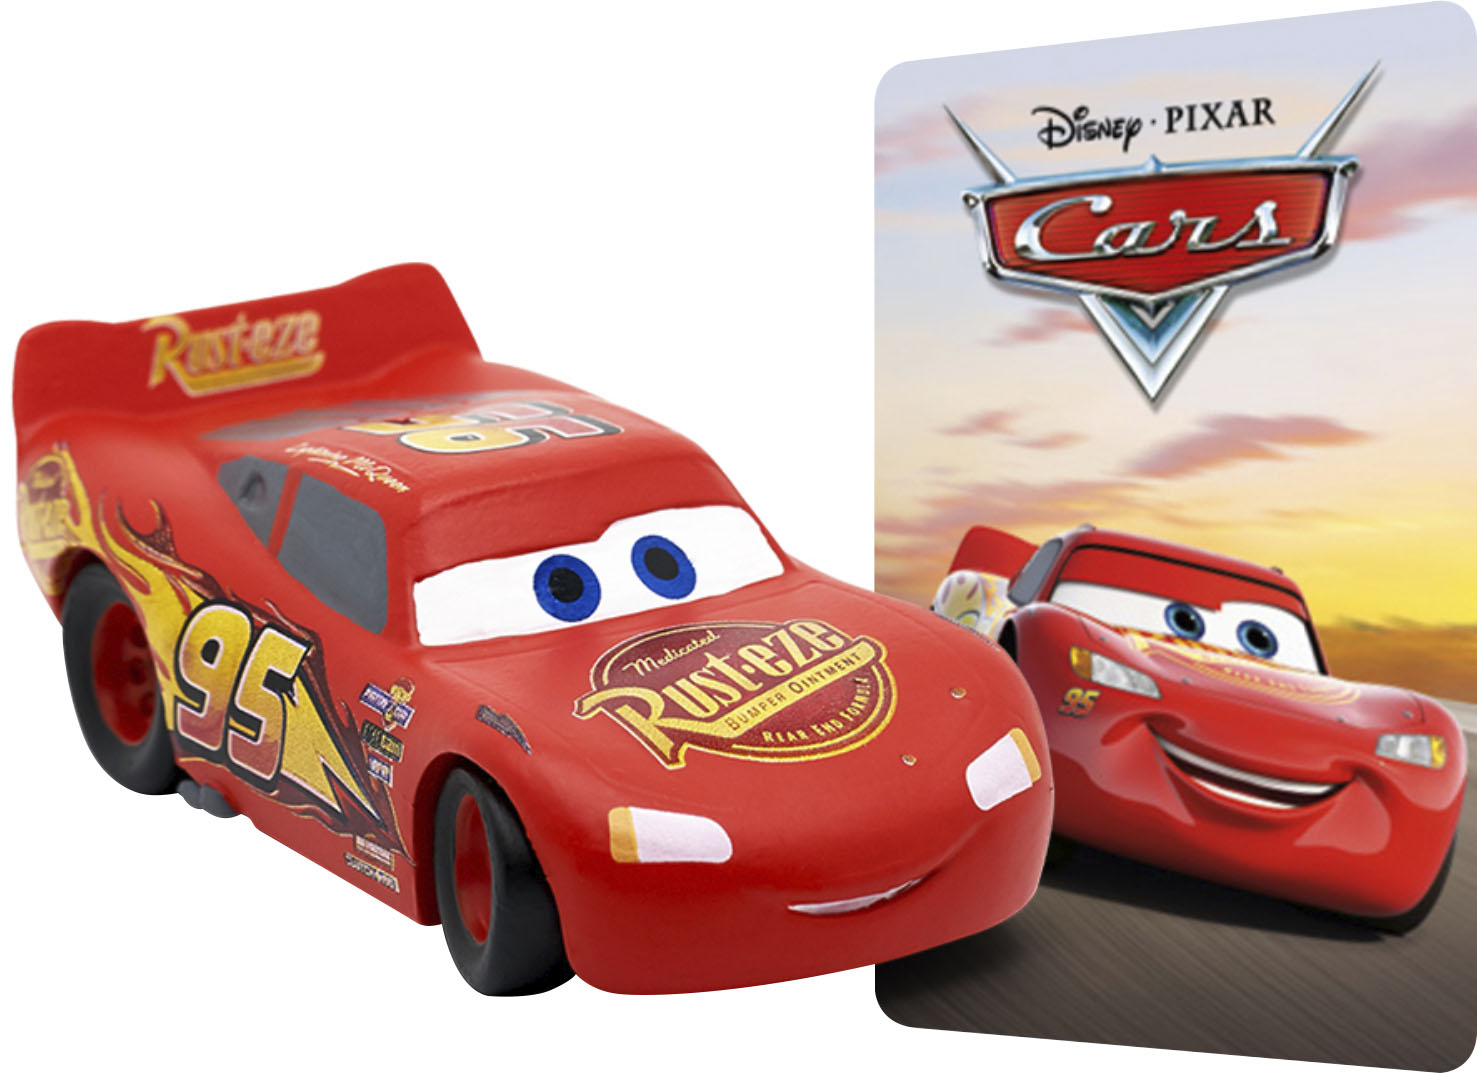 zwaan Sanders Goed Best Buy: Tonies Disney and Pixar Cars Tonie Audio Play Figurine 10000501